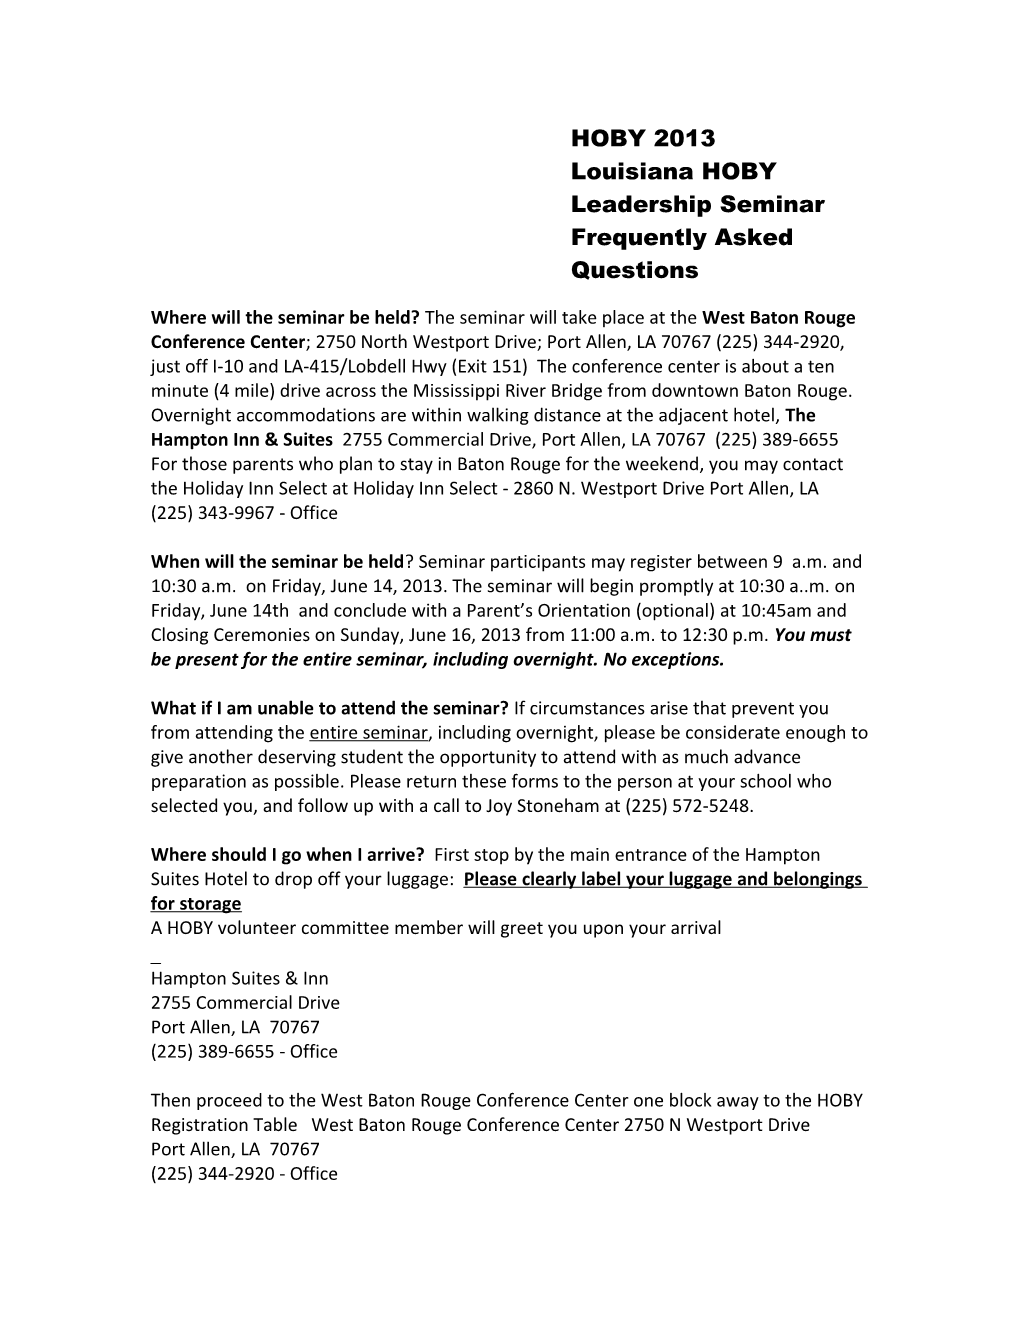 Louisiana HOBY Leadership Seminar